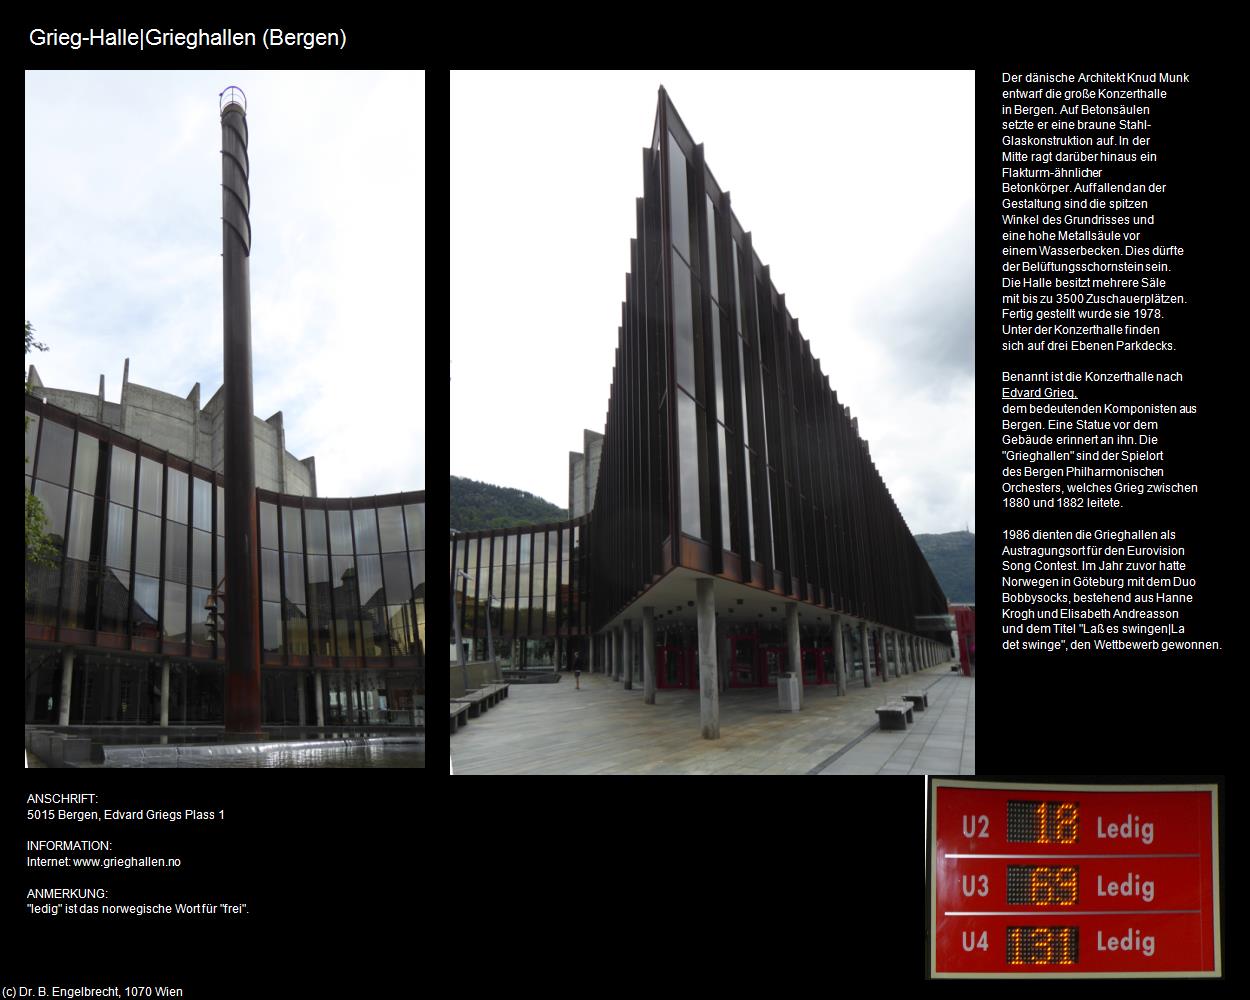 Grieg-Halle|Grieghallen (Bergen) (Bergen) in Kulturatlas-REISE nach NORWEGEN(c)B.Engelbrecht